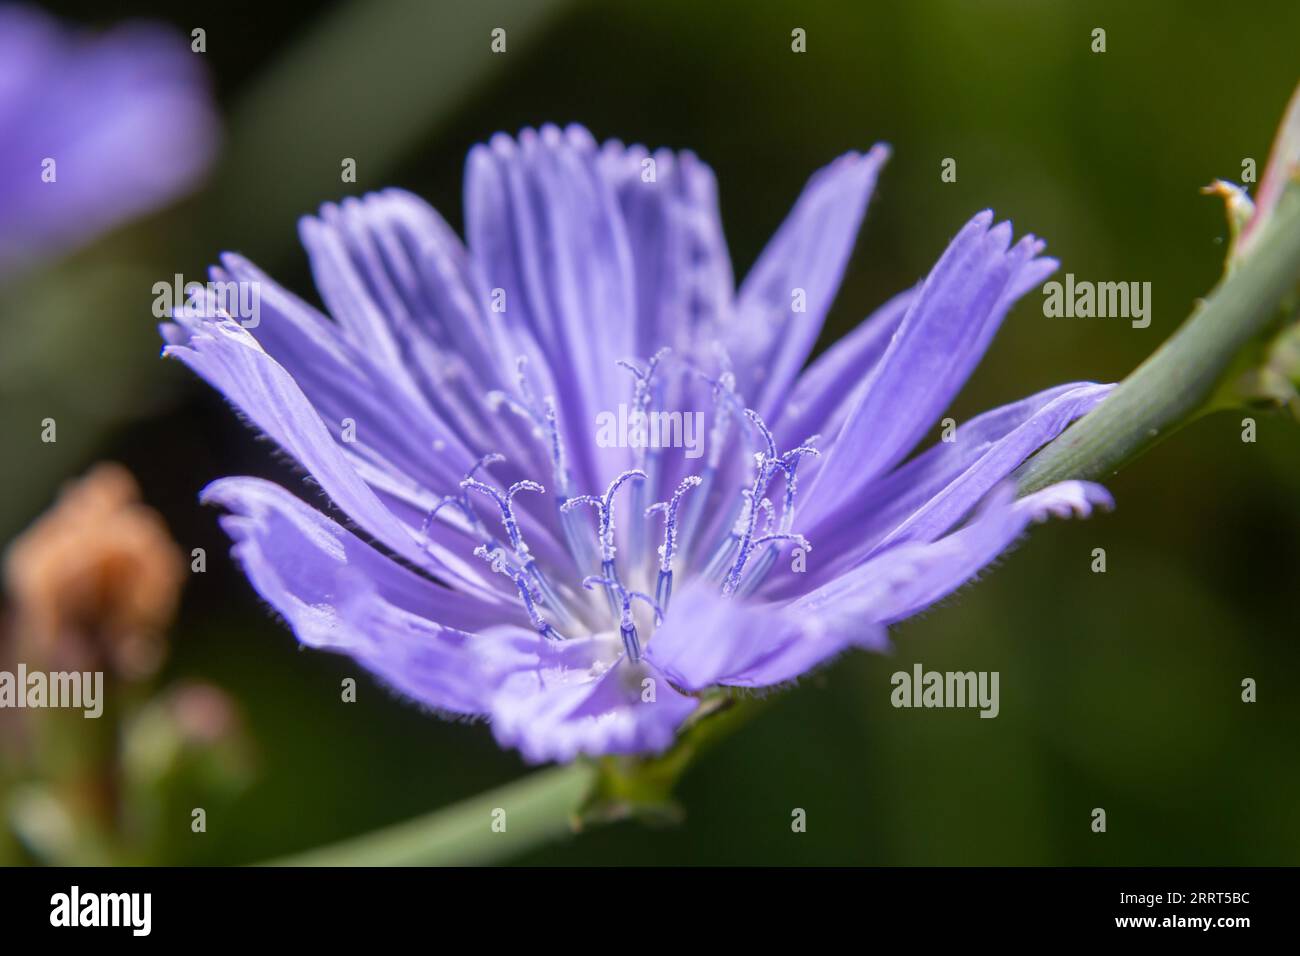 La cicoria comune o Cichorium intybus fiori comunemente chiamati marinai blu, cicoria, caffè erbaccia, o succoria è una pianta erbacea perenne. Cl Foto Stock